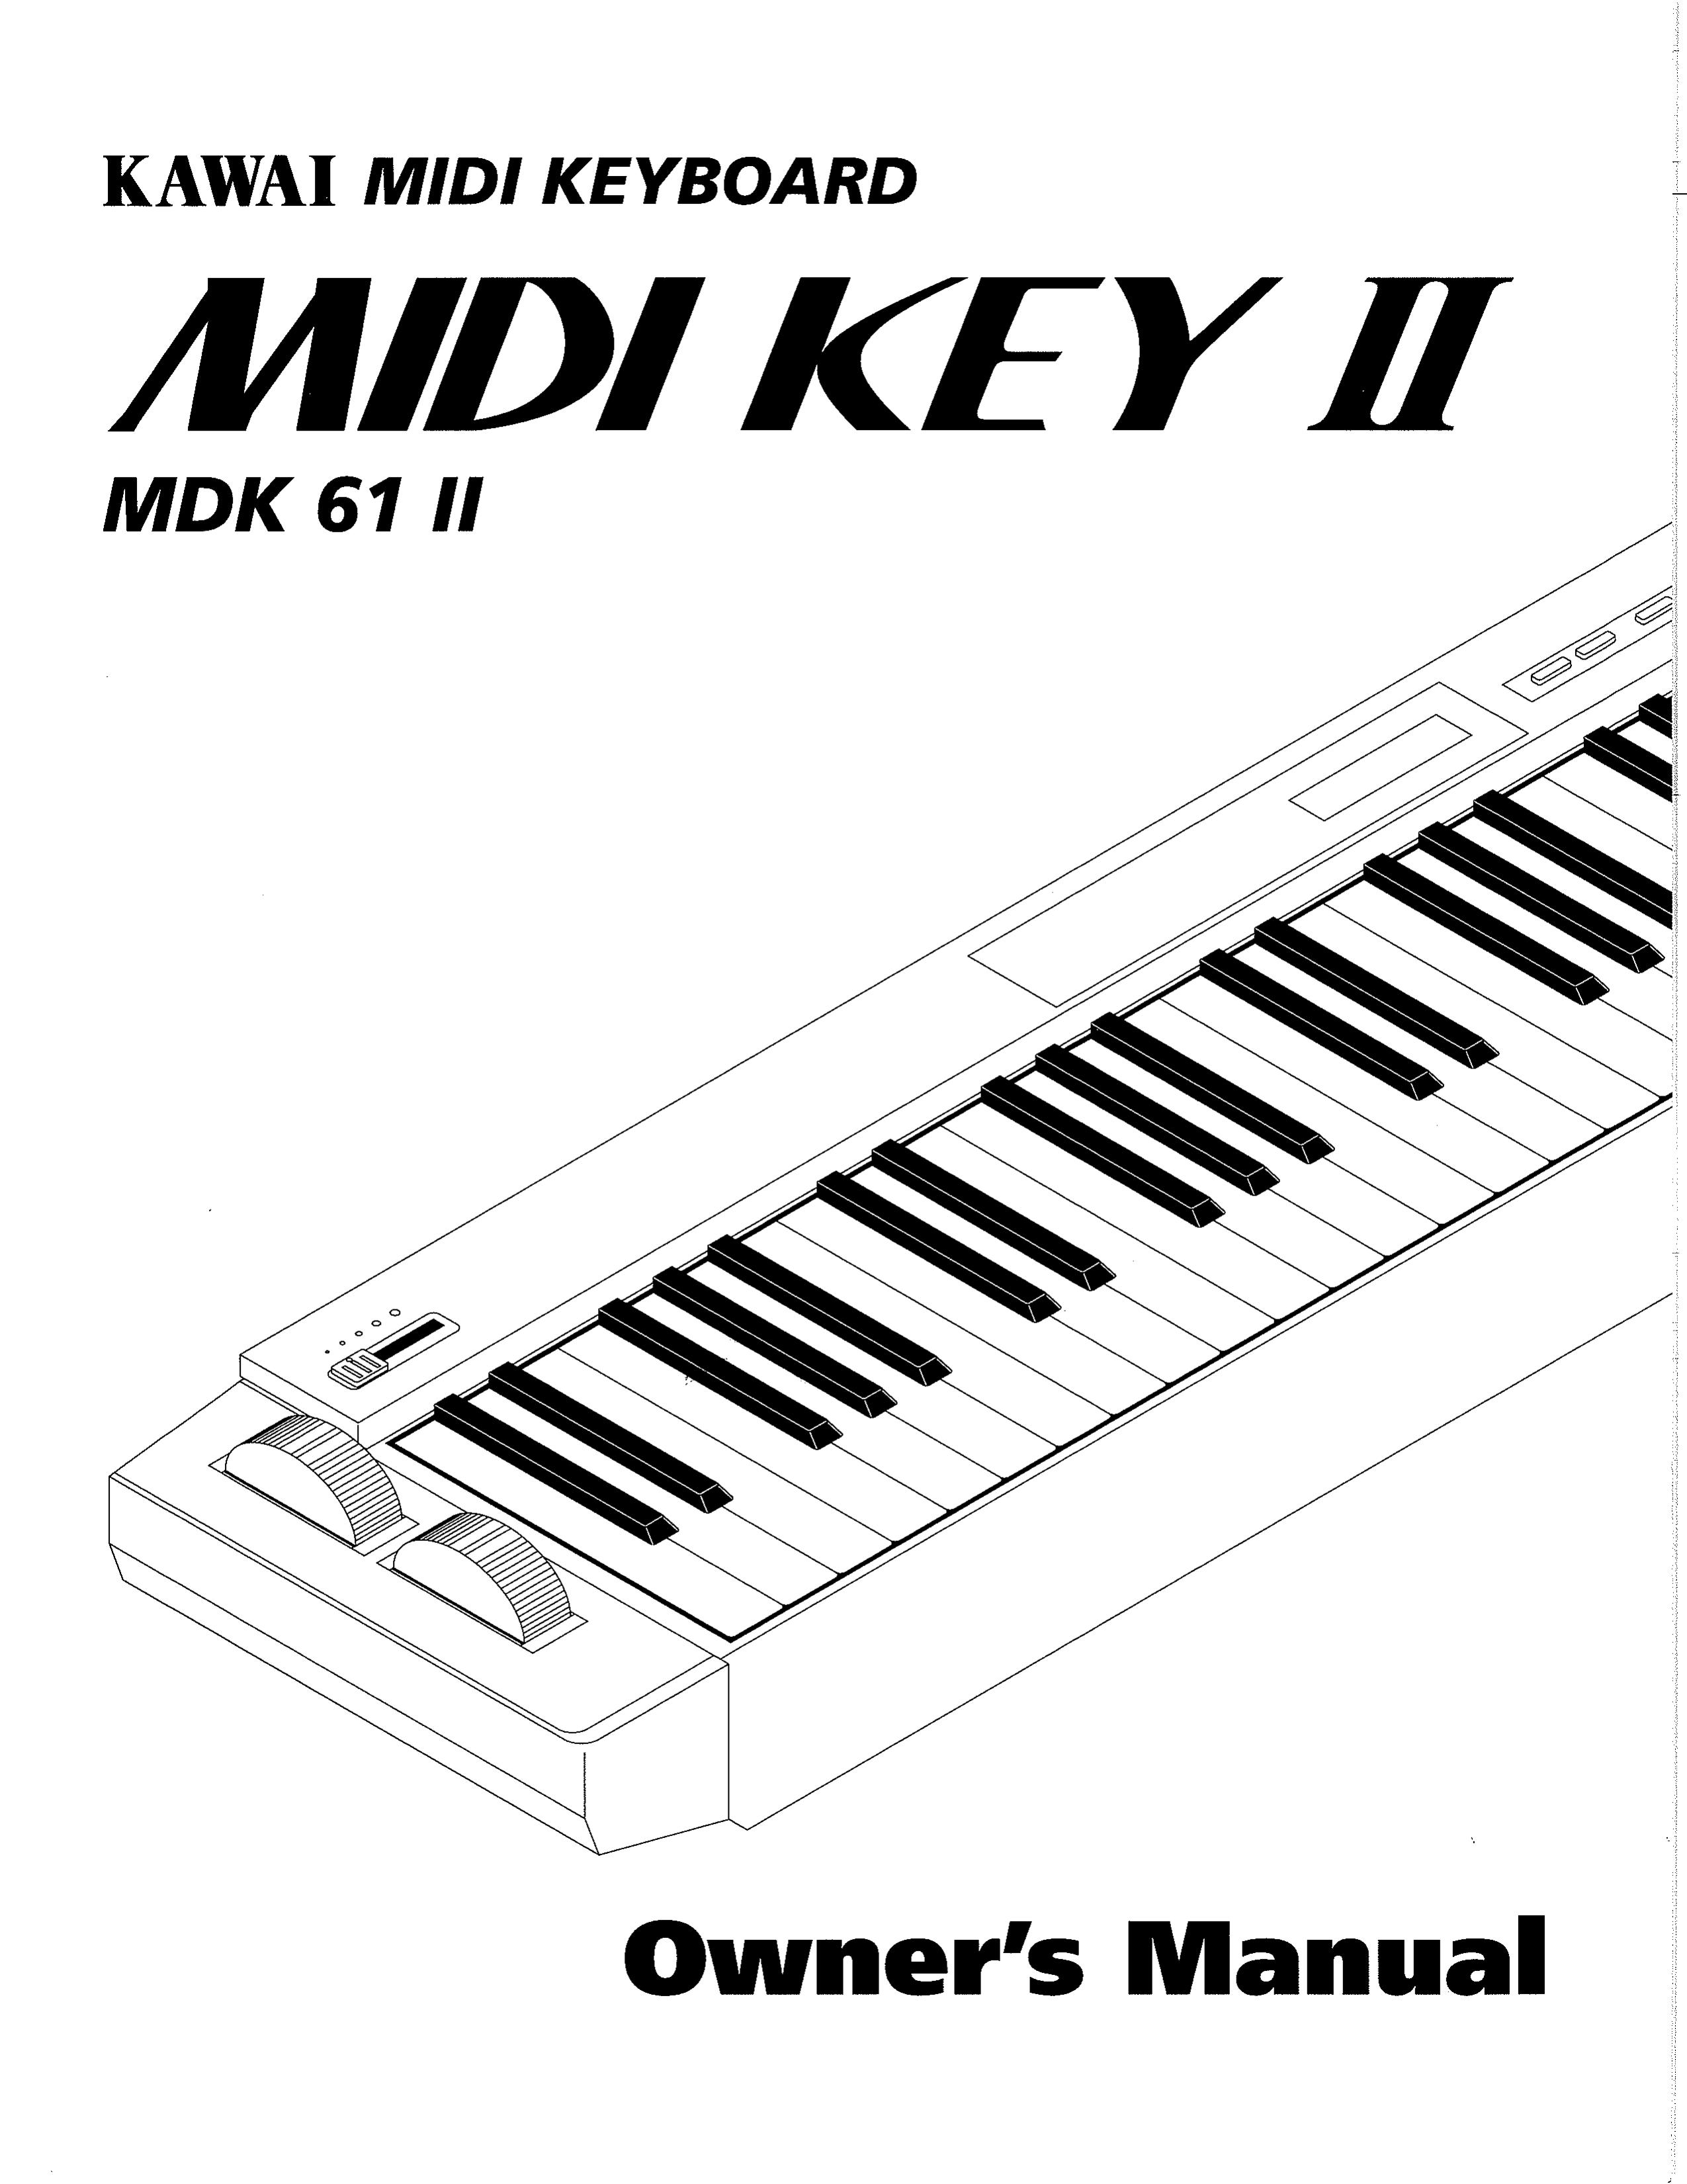 Kawai MDK 61 II Electronic Keyboard User Manual